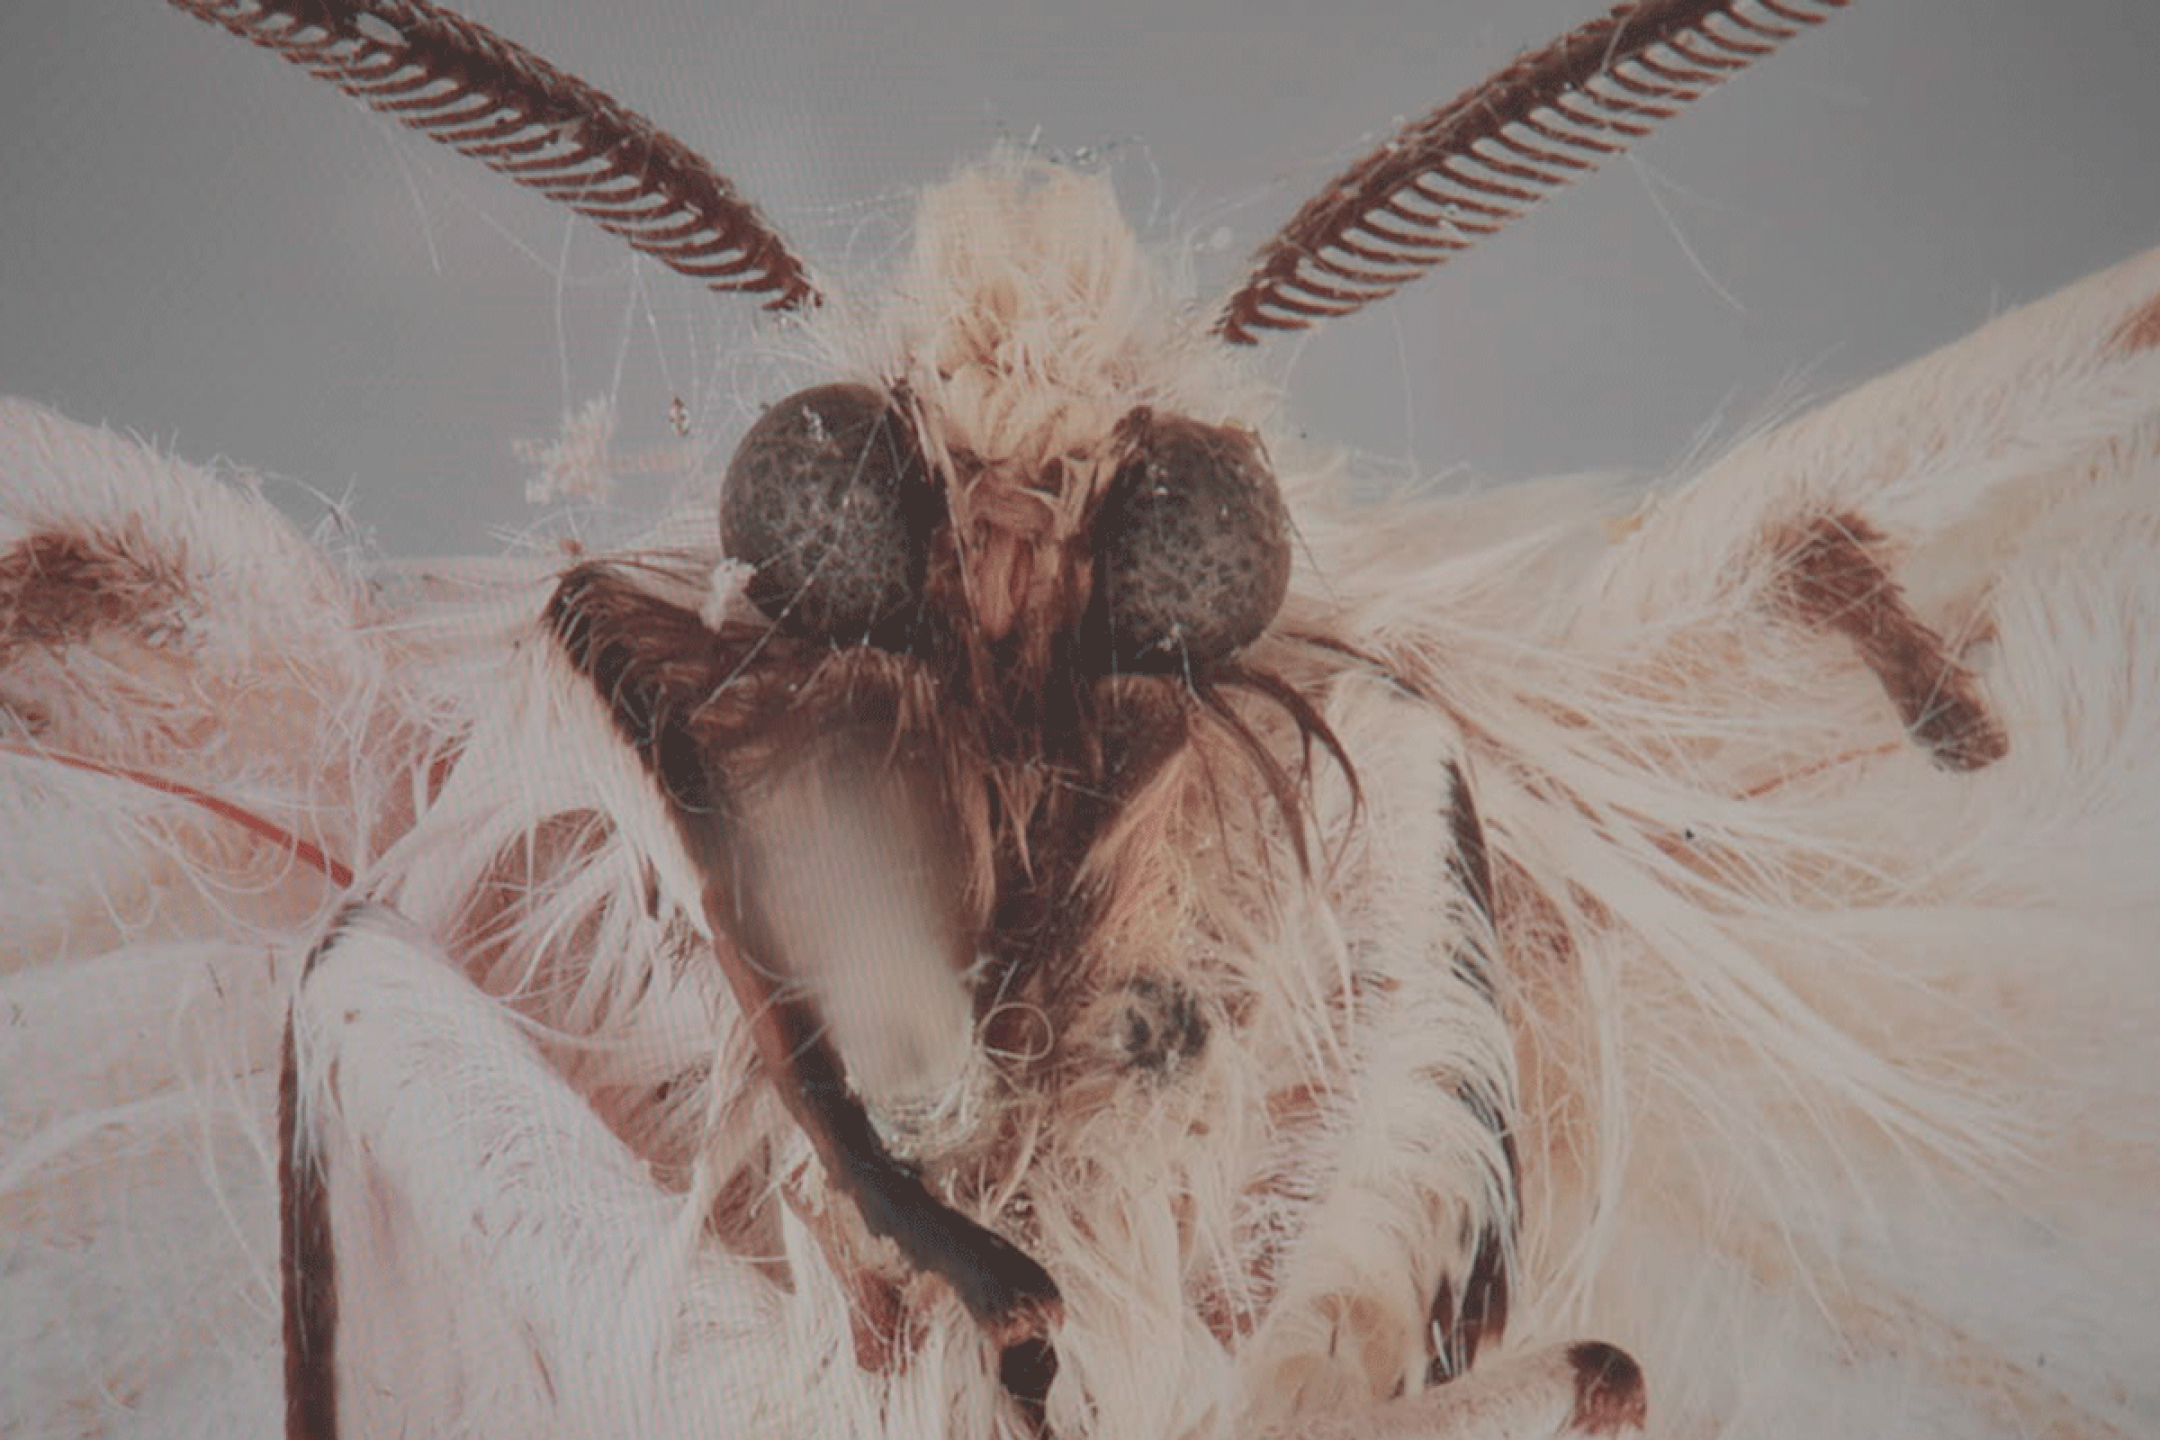 Eine tote Motte, die mit Spinnweben bedeckt ist, scheint direkt in die Kamera zu schauen. Sie ist so nah, dass ihre riesigen Augen, Haare und Sensoren sichtbar sind.